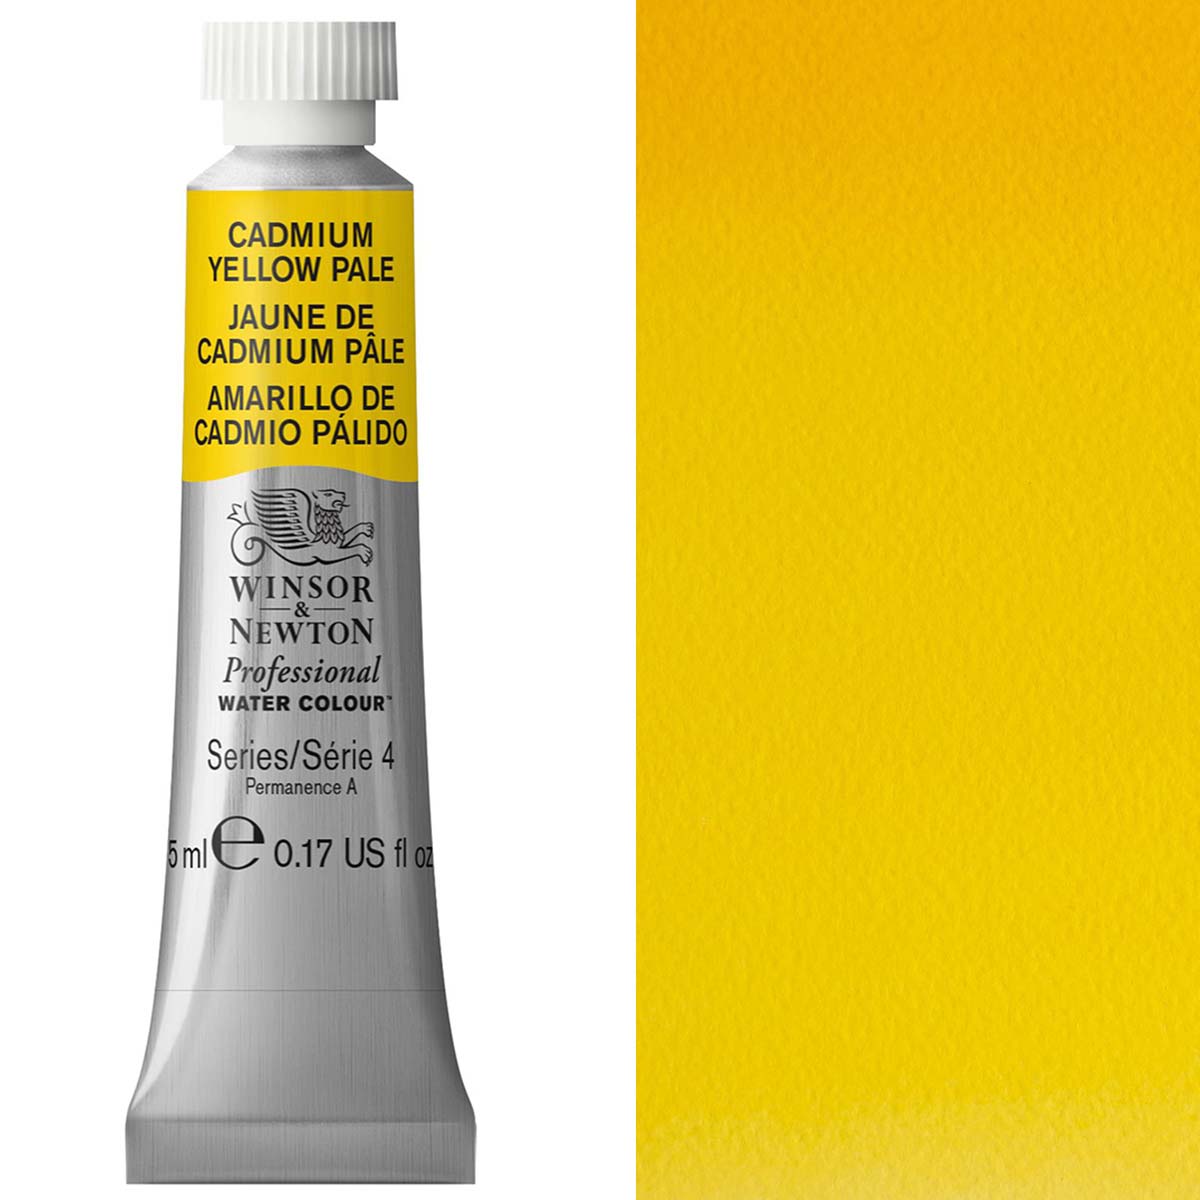 Winsor en Newton - aquarel van professionele artiesten - 5 ml - cadmium geel bleek